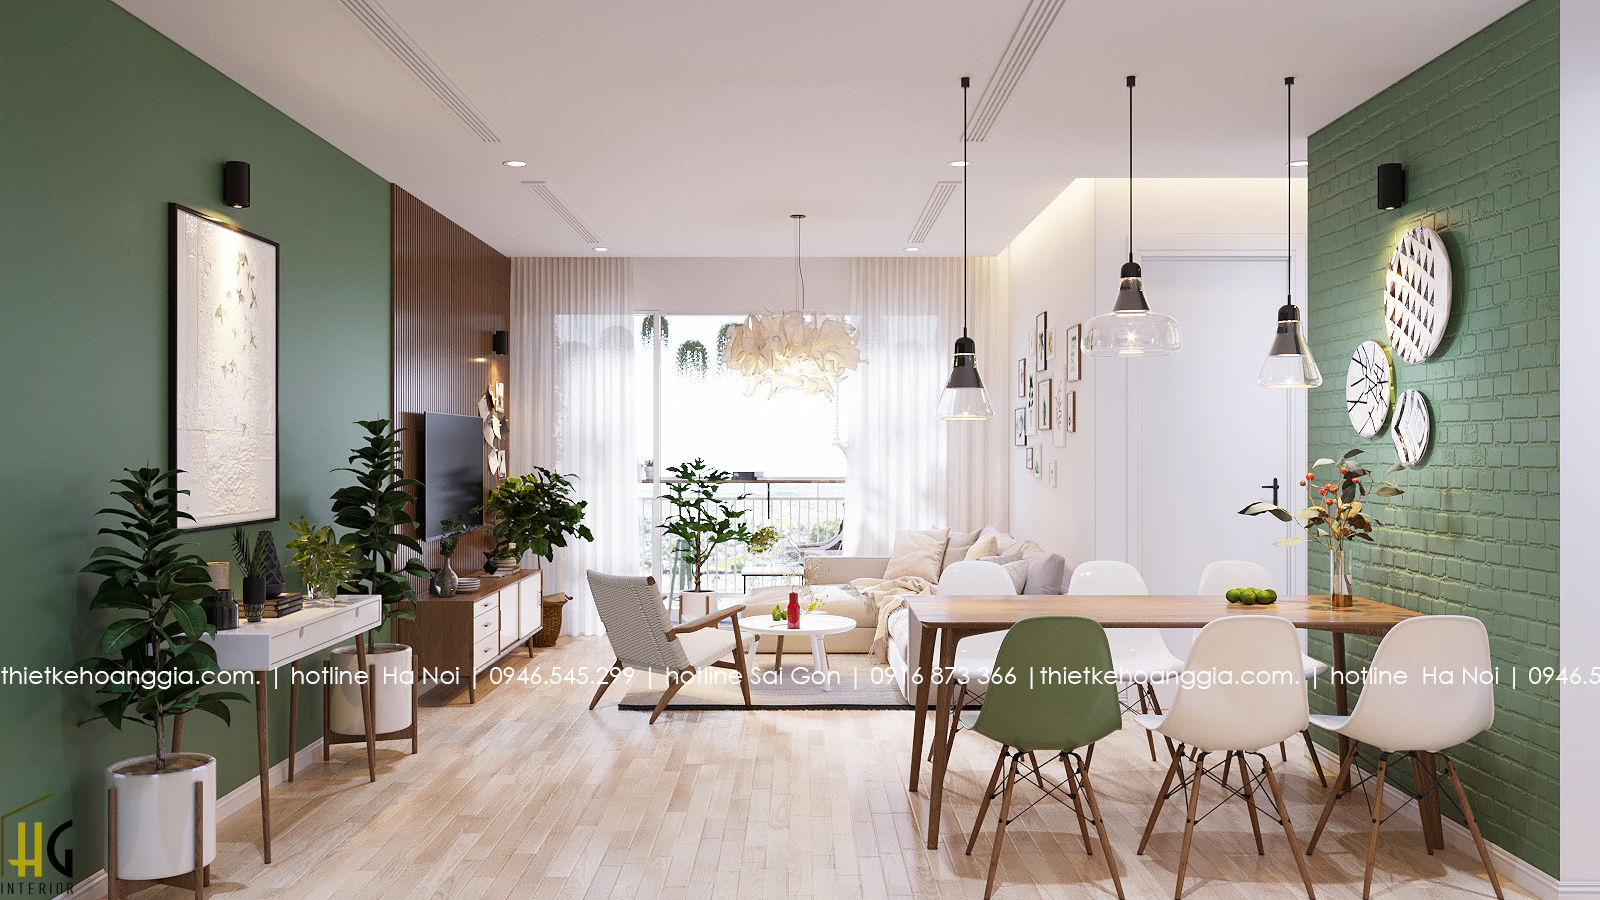 Thiết kế nội thất chung cư 55m cho chị Lan Anh, Nội Thất Hoàng Gia Nội Thất Hoàng Gia Living room